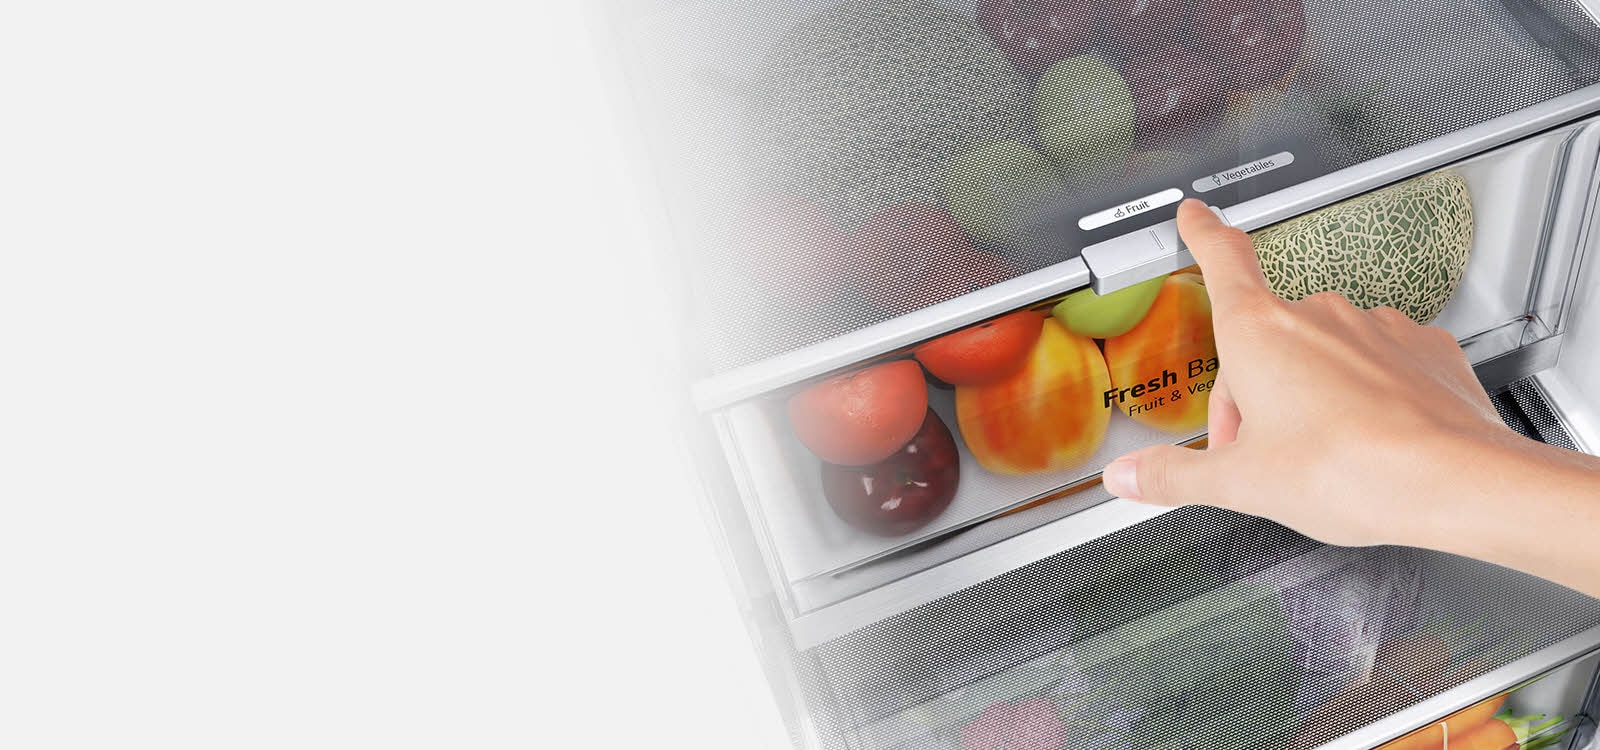 A hűtőszekrény alsó fiókjai tele vannak színes friss élelmiszerekkel. A  kép a szabályozóra fókuszál, amellyel kiválasztható az optimális páratartalom az élelmiszerek frissességének megőrzése érdekében.